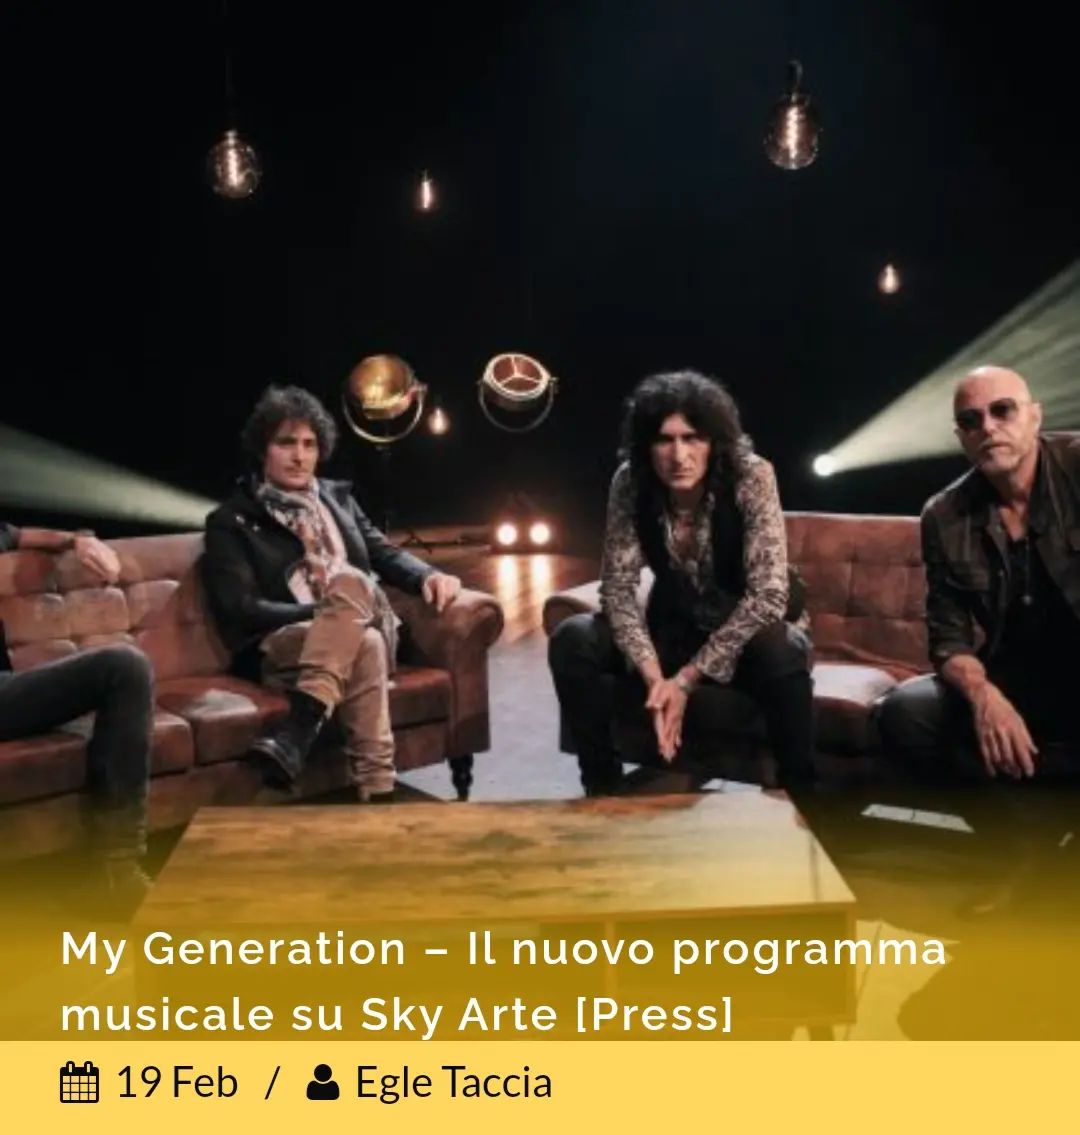 #nopress My Generation è il nuovo programma musicale di @skyarte, in onda da stasera. Ospiti della prima puntata i @negritaband
Articolo su www.nonsensemag.it
#mygeneration #skyarte #negrita #nonsensemag #nonsense #musica #onlygoodvibes #onlygoodmusic #music #novità #instamusic #comunicatostampa